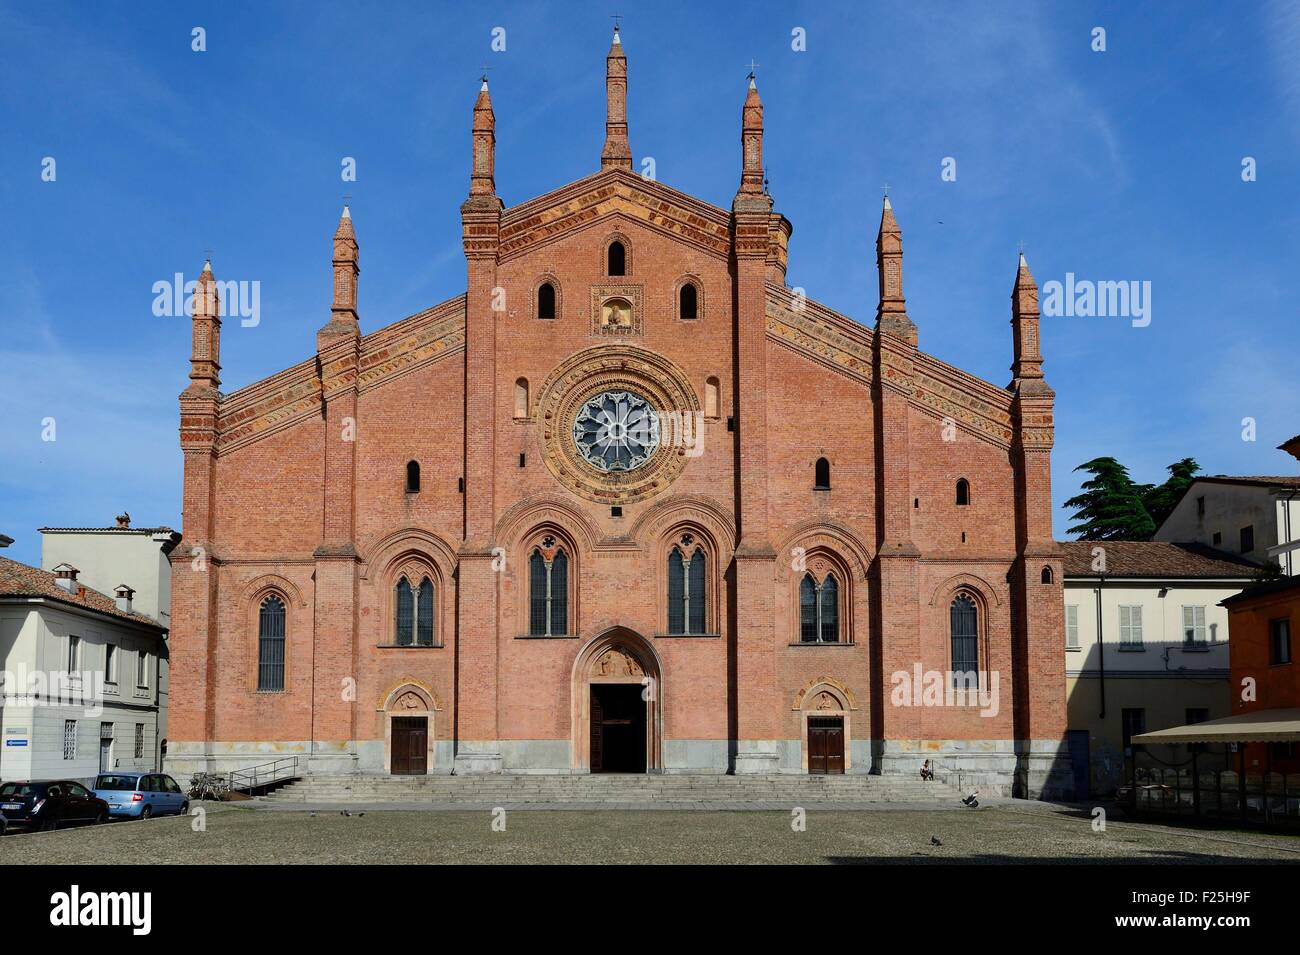 Italy, Lombardy, Pavia, the historic city center, the church of Santa Maria del Carmine Stock Photo